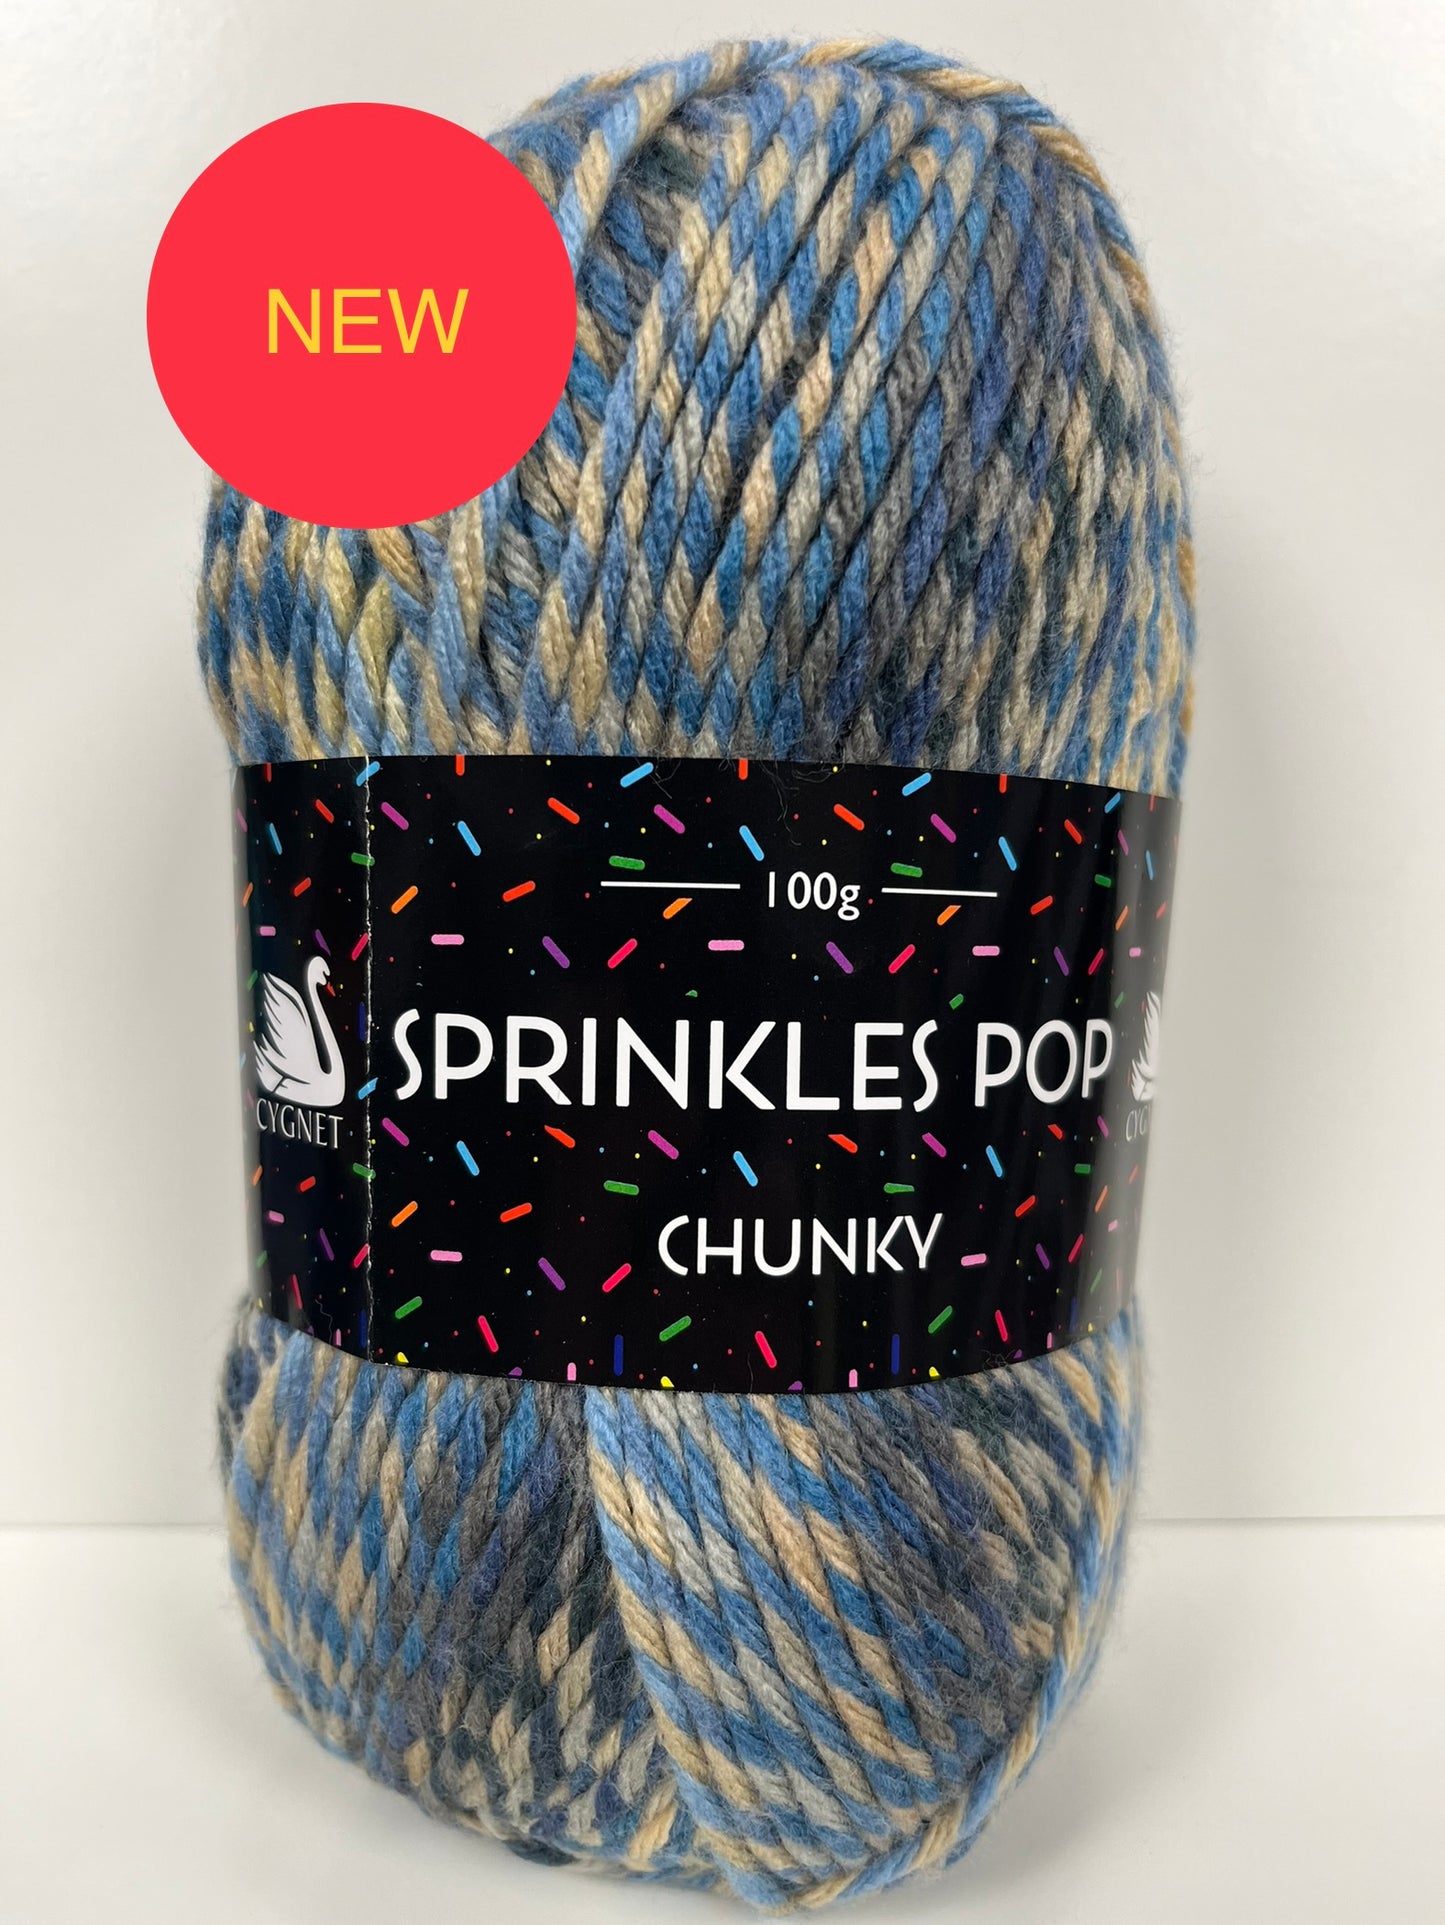 Seaflower Cygnet Sprinkles pop